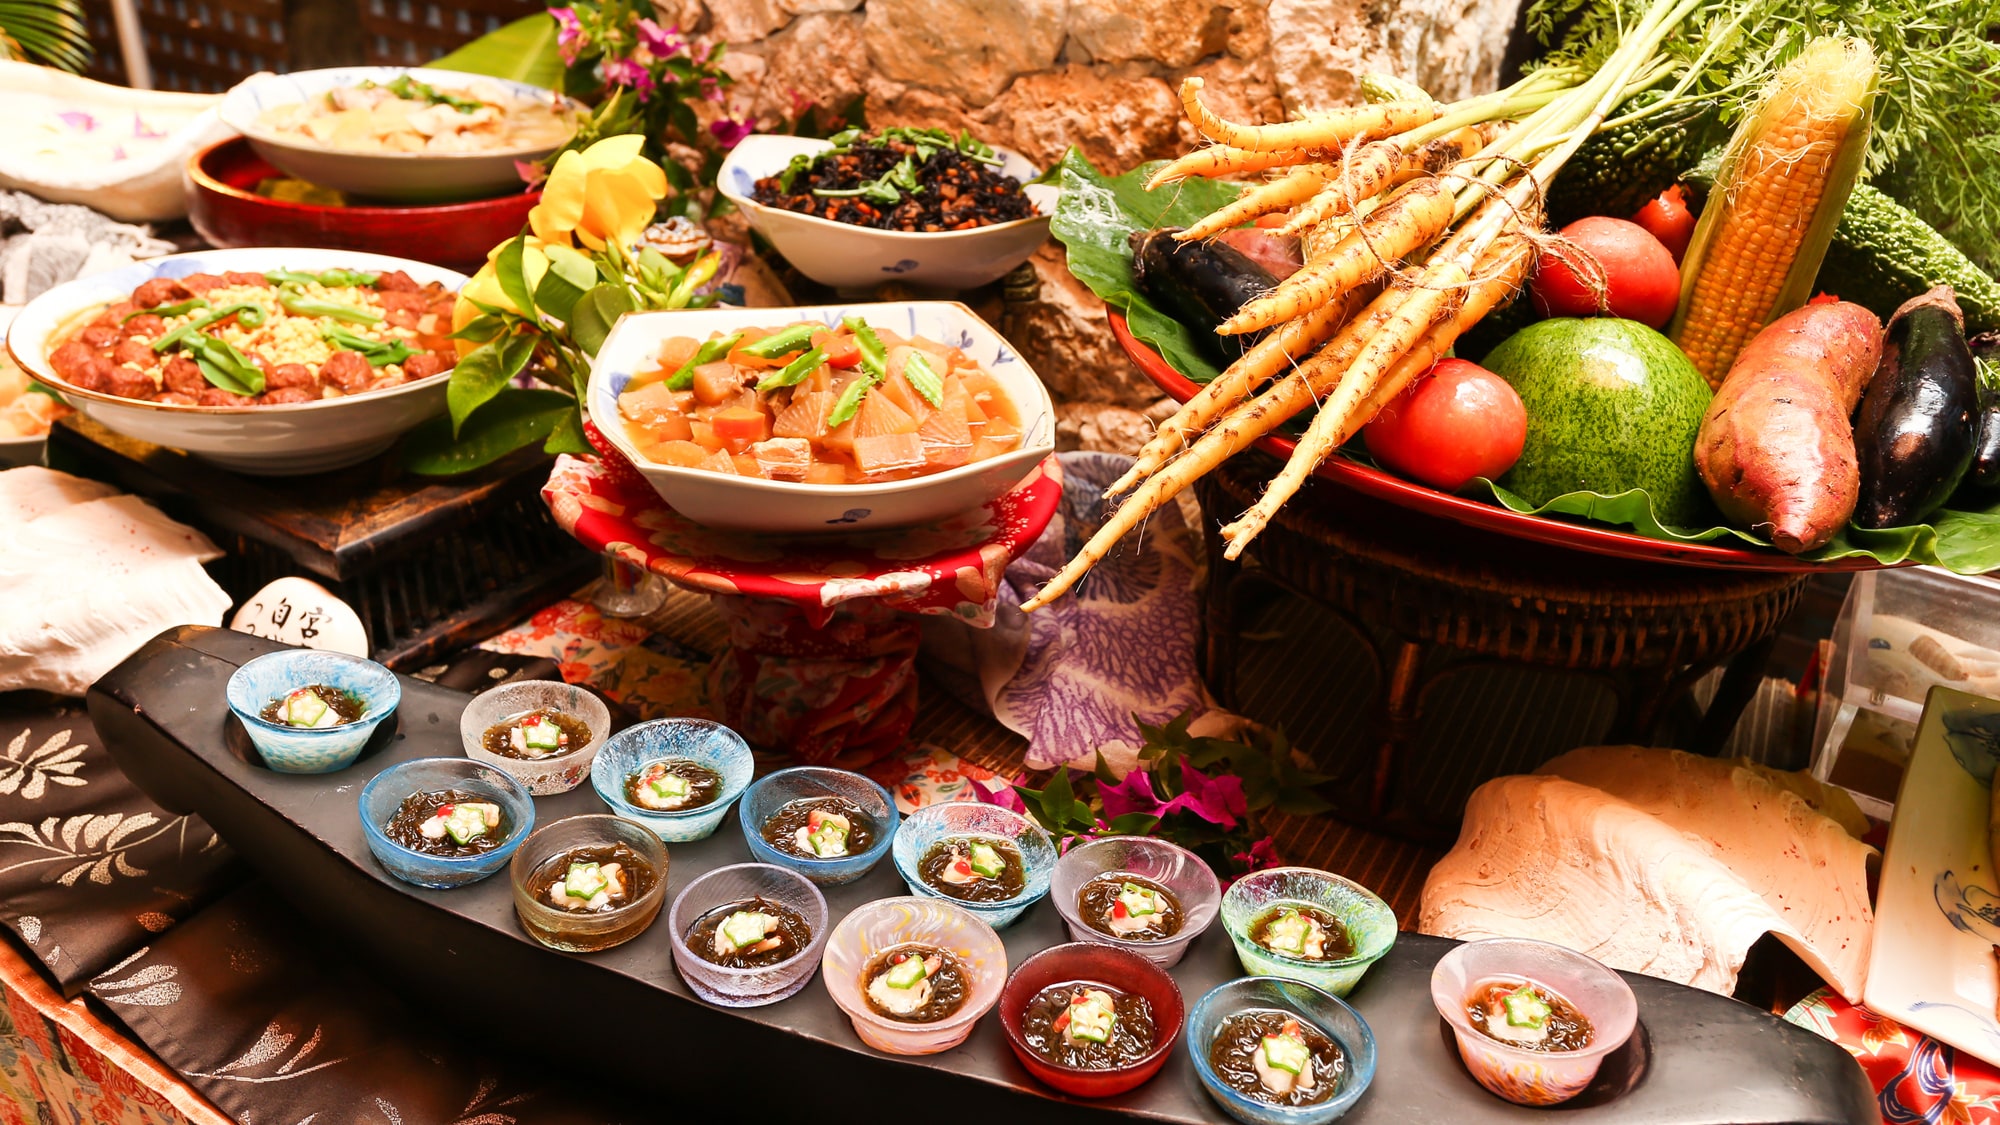 【馆内餐厅/Maralunga日式琉球料理】早餐以日式、西式、琉球料理的自助餐形式供应。